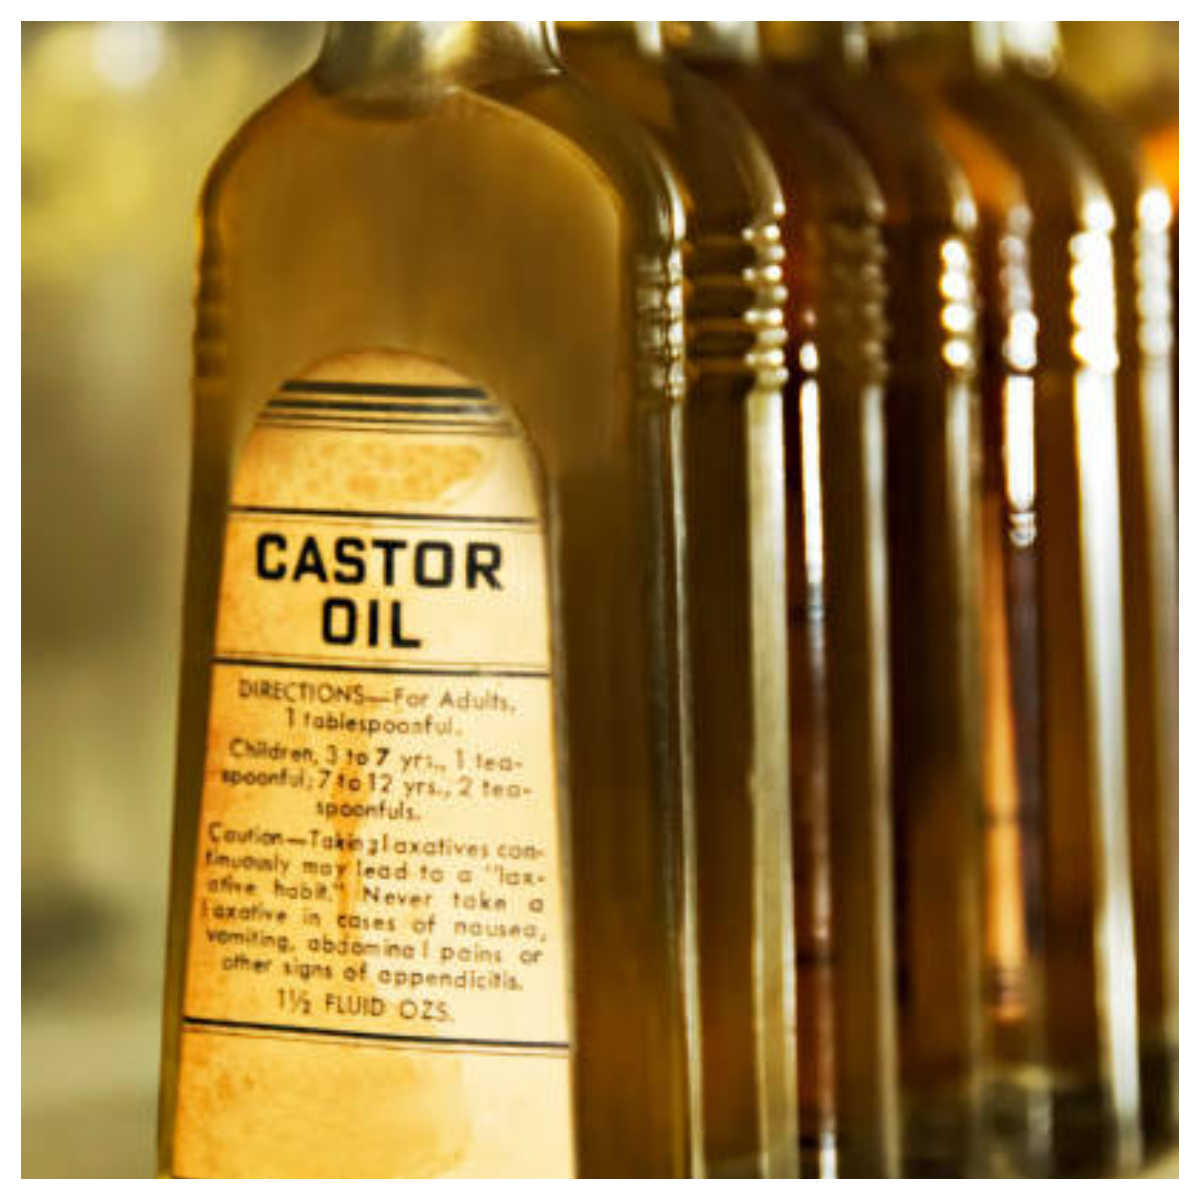 Castor oil for hair growth: Secrets revealed